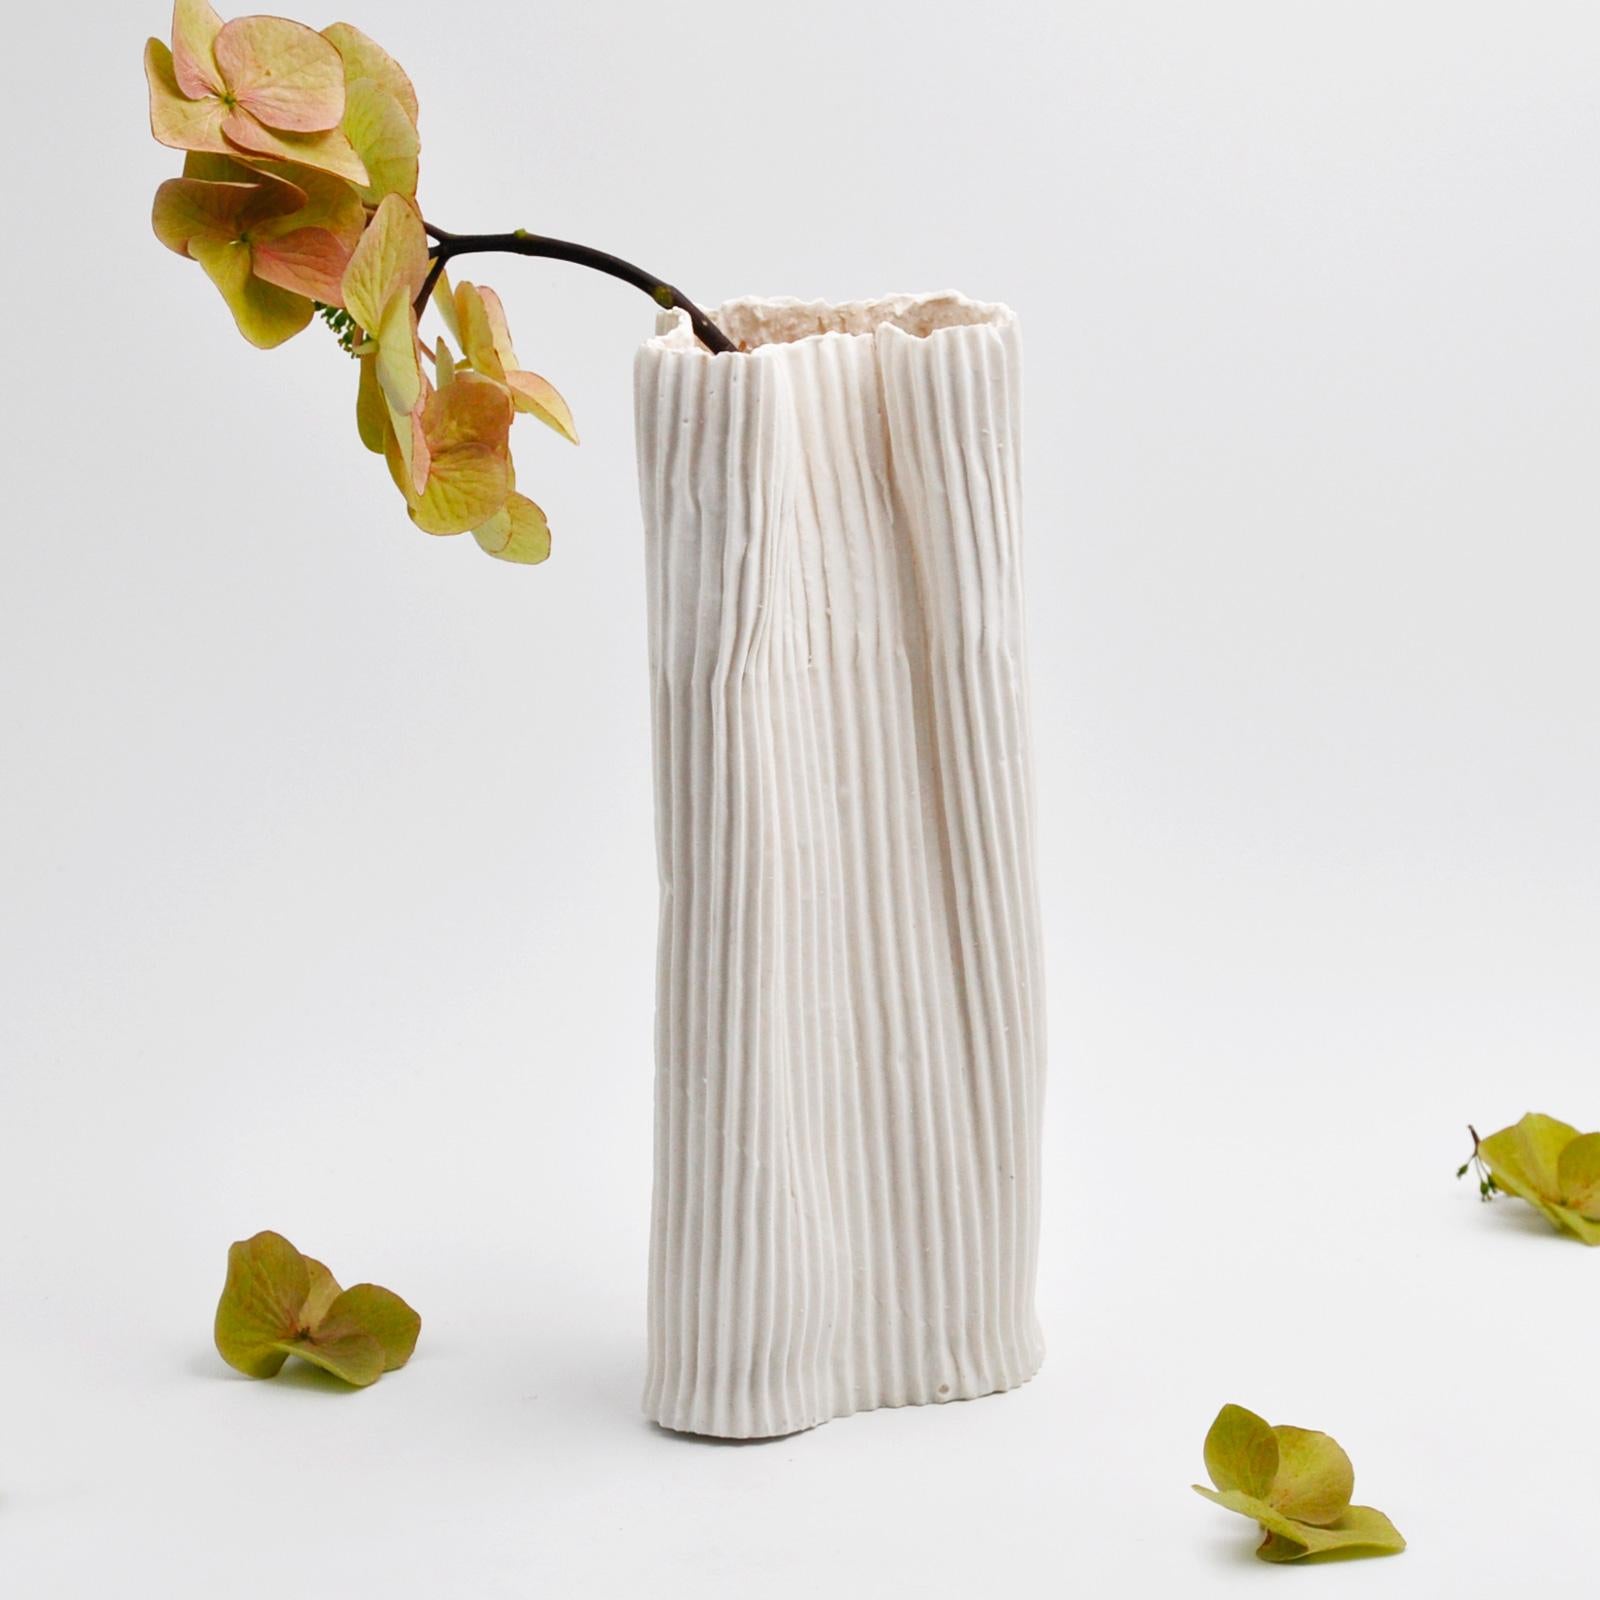 Questo elegante vaso in porcellana e paperclay fa parte di Paesaggio 9, la serie di  tre vasi della nostra collezione esclusiva Paesaggio sotto la Luna. 
Ideato dal designer Nino Basso,  il vaso ha un design essenziale e la texture di colore bianco